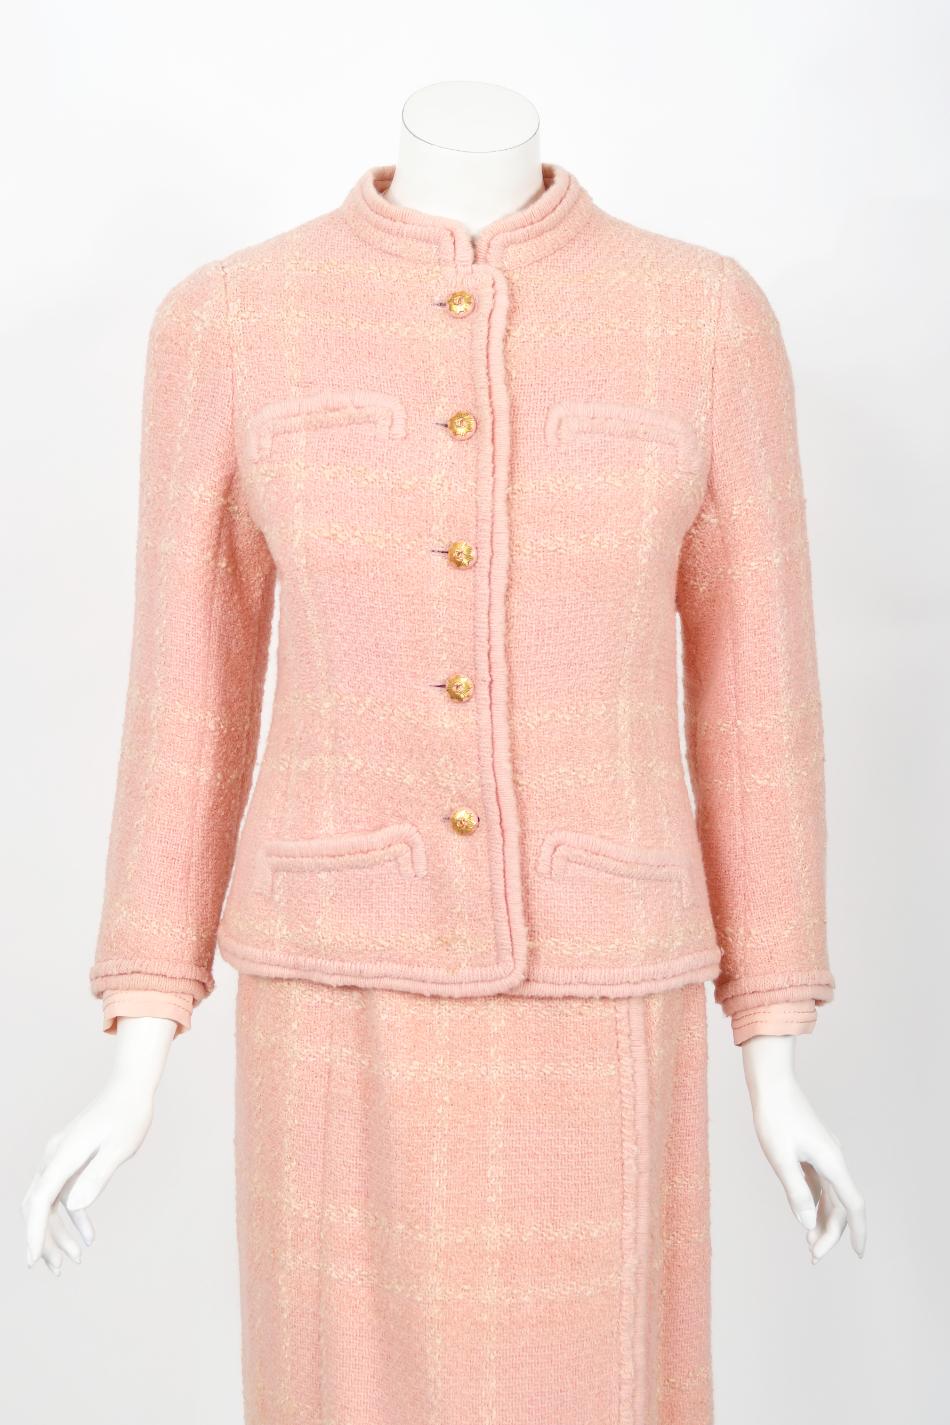 Chanel Haute Couture documenté veste chemisier jupe chemisier en laine rose vintage 1973 en vente 7